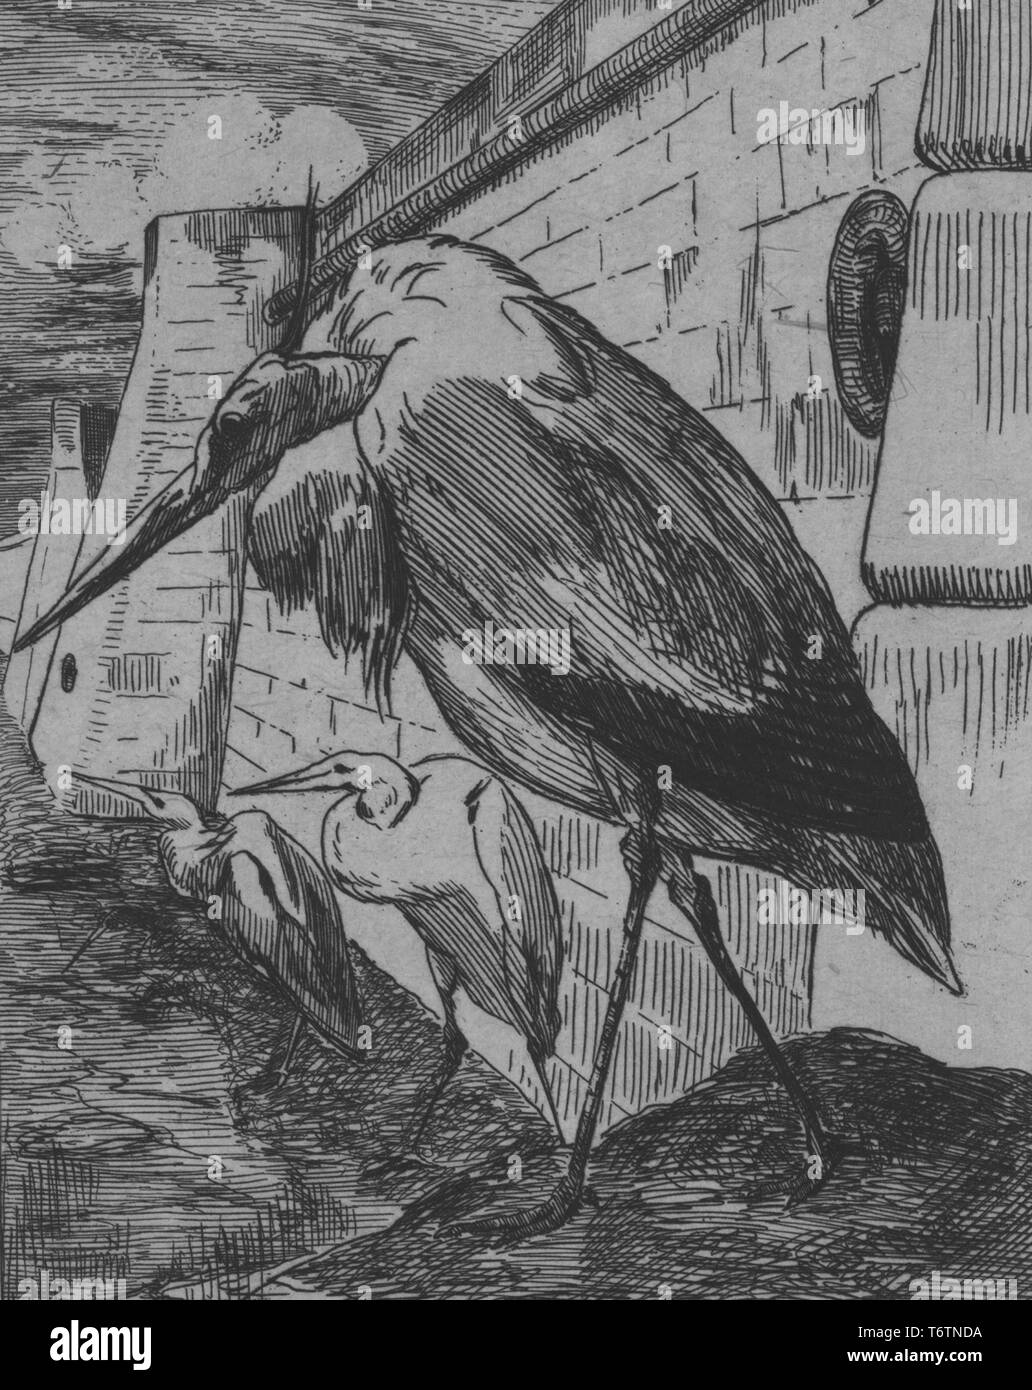 Schwarze und weiße Radierung zeigt eine Nahaufnahme, Profil anzeigen eines vieldeutig anthropomorphized Stork, stand vor dem Rand eines imposanten steinernen Kai, mit zwei mehr Störche im Hintergrund sichtbar; mit dem Titel 'Les Cigognes" (die Störche), nummeriert, vom Illustrator Felix Bracquemond, 1867. Von der New York Public Library. () Stockfoto